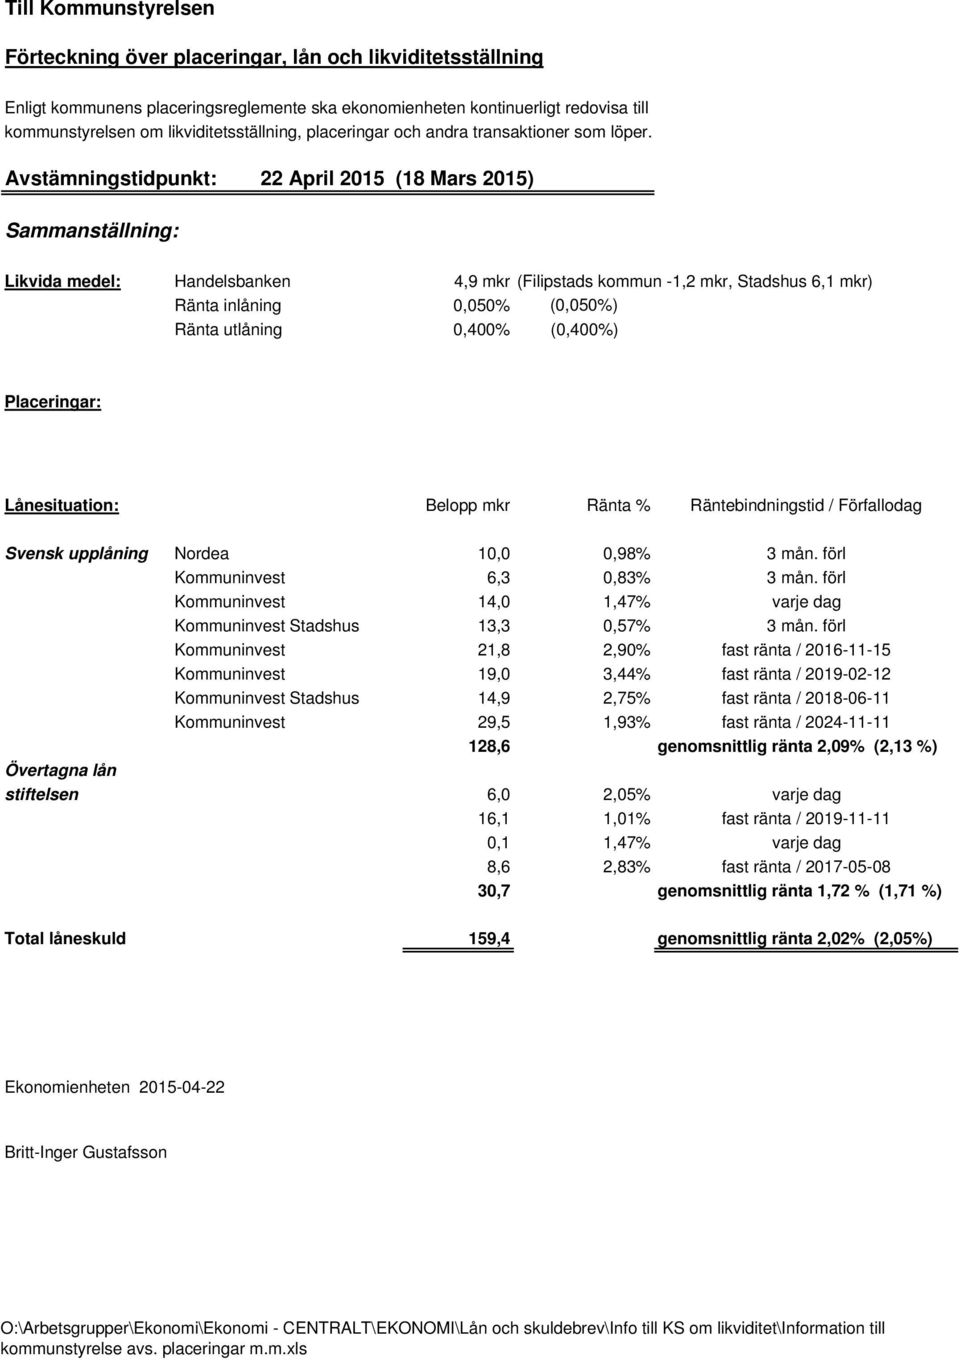 Avstämningstidpunkt: 22 April 2015 (18 Mars 2015) Sammanställning: Likvida medel: Handelsbanken 4,9 mkr (Filipstads kommun -1,2 mkr, Stadshus 6,1 mkr) Ränta inlåning 0,050% (0,050%) Ränta utlåning